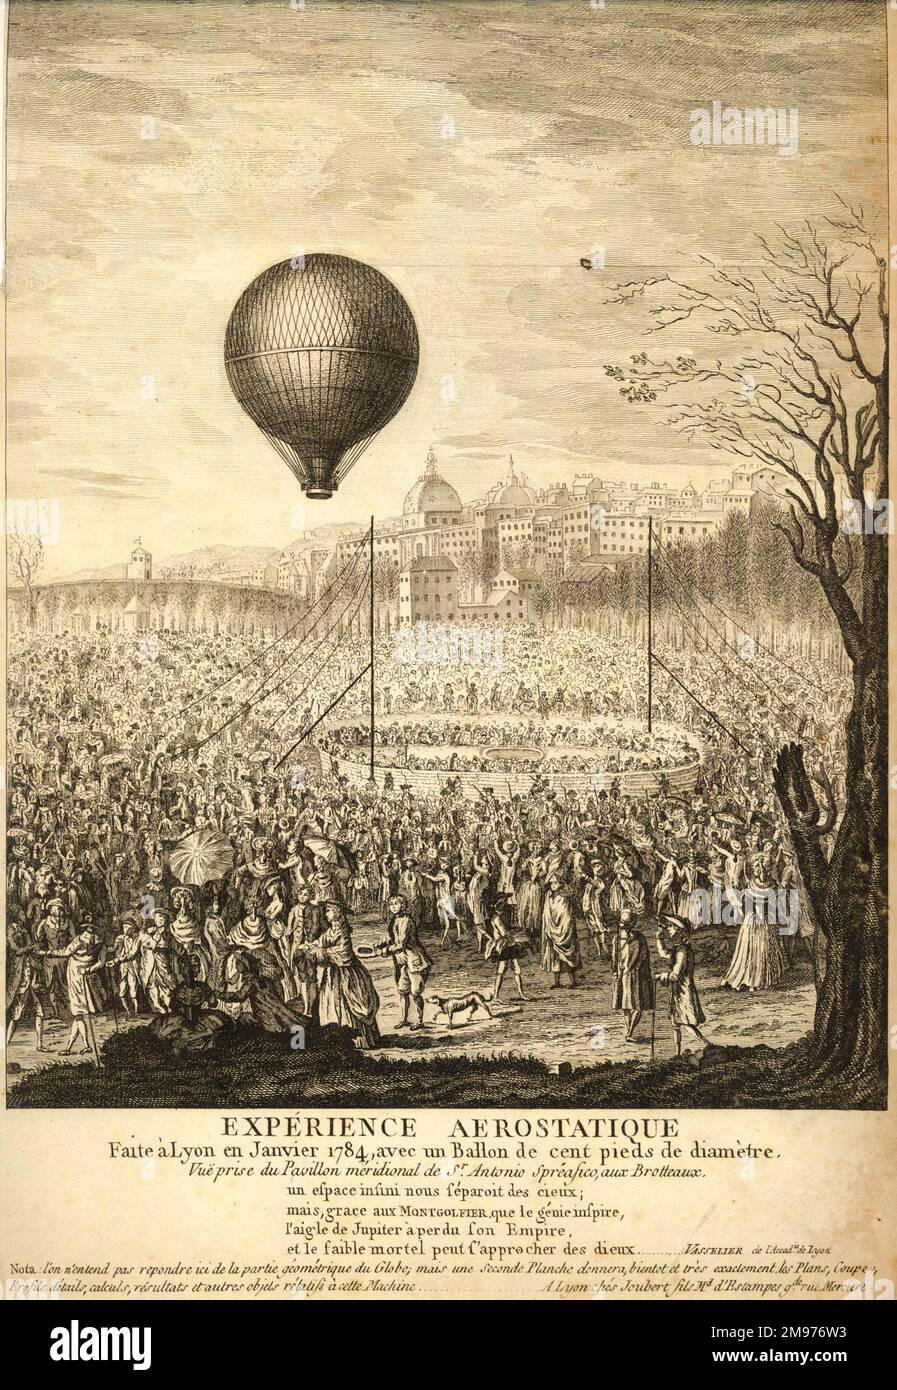 Plate showing “Expérience Aerostatique. Faite à Lyon Janvier 1784, avec un Ballon de cent pieds de diameter.” Stock Photo